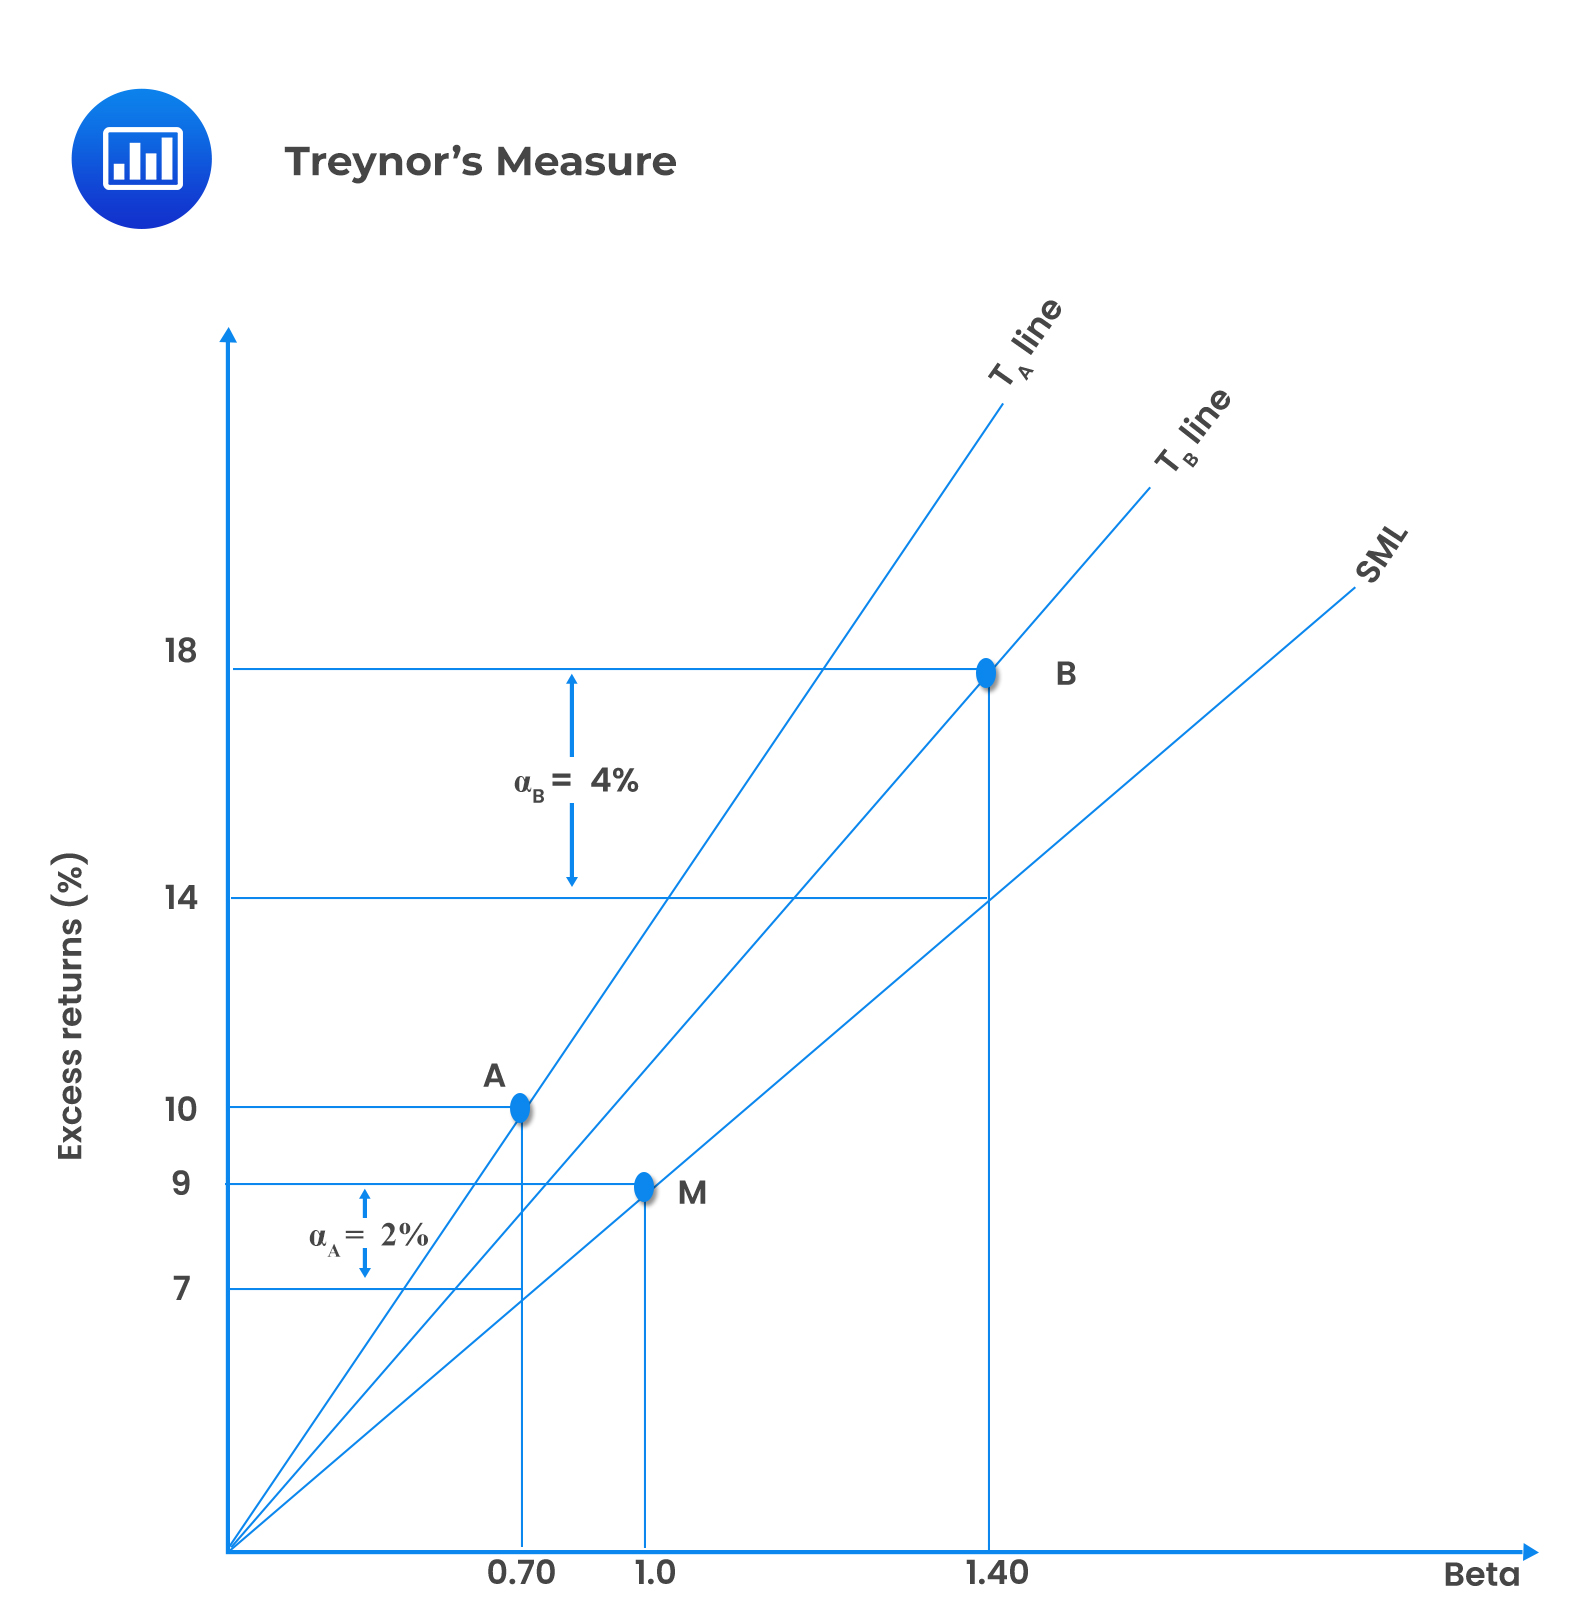 Treynor’s Measure